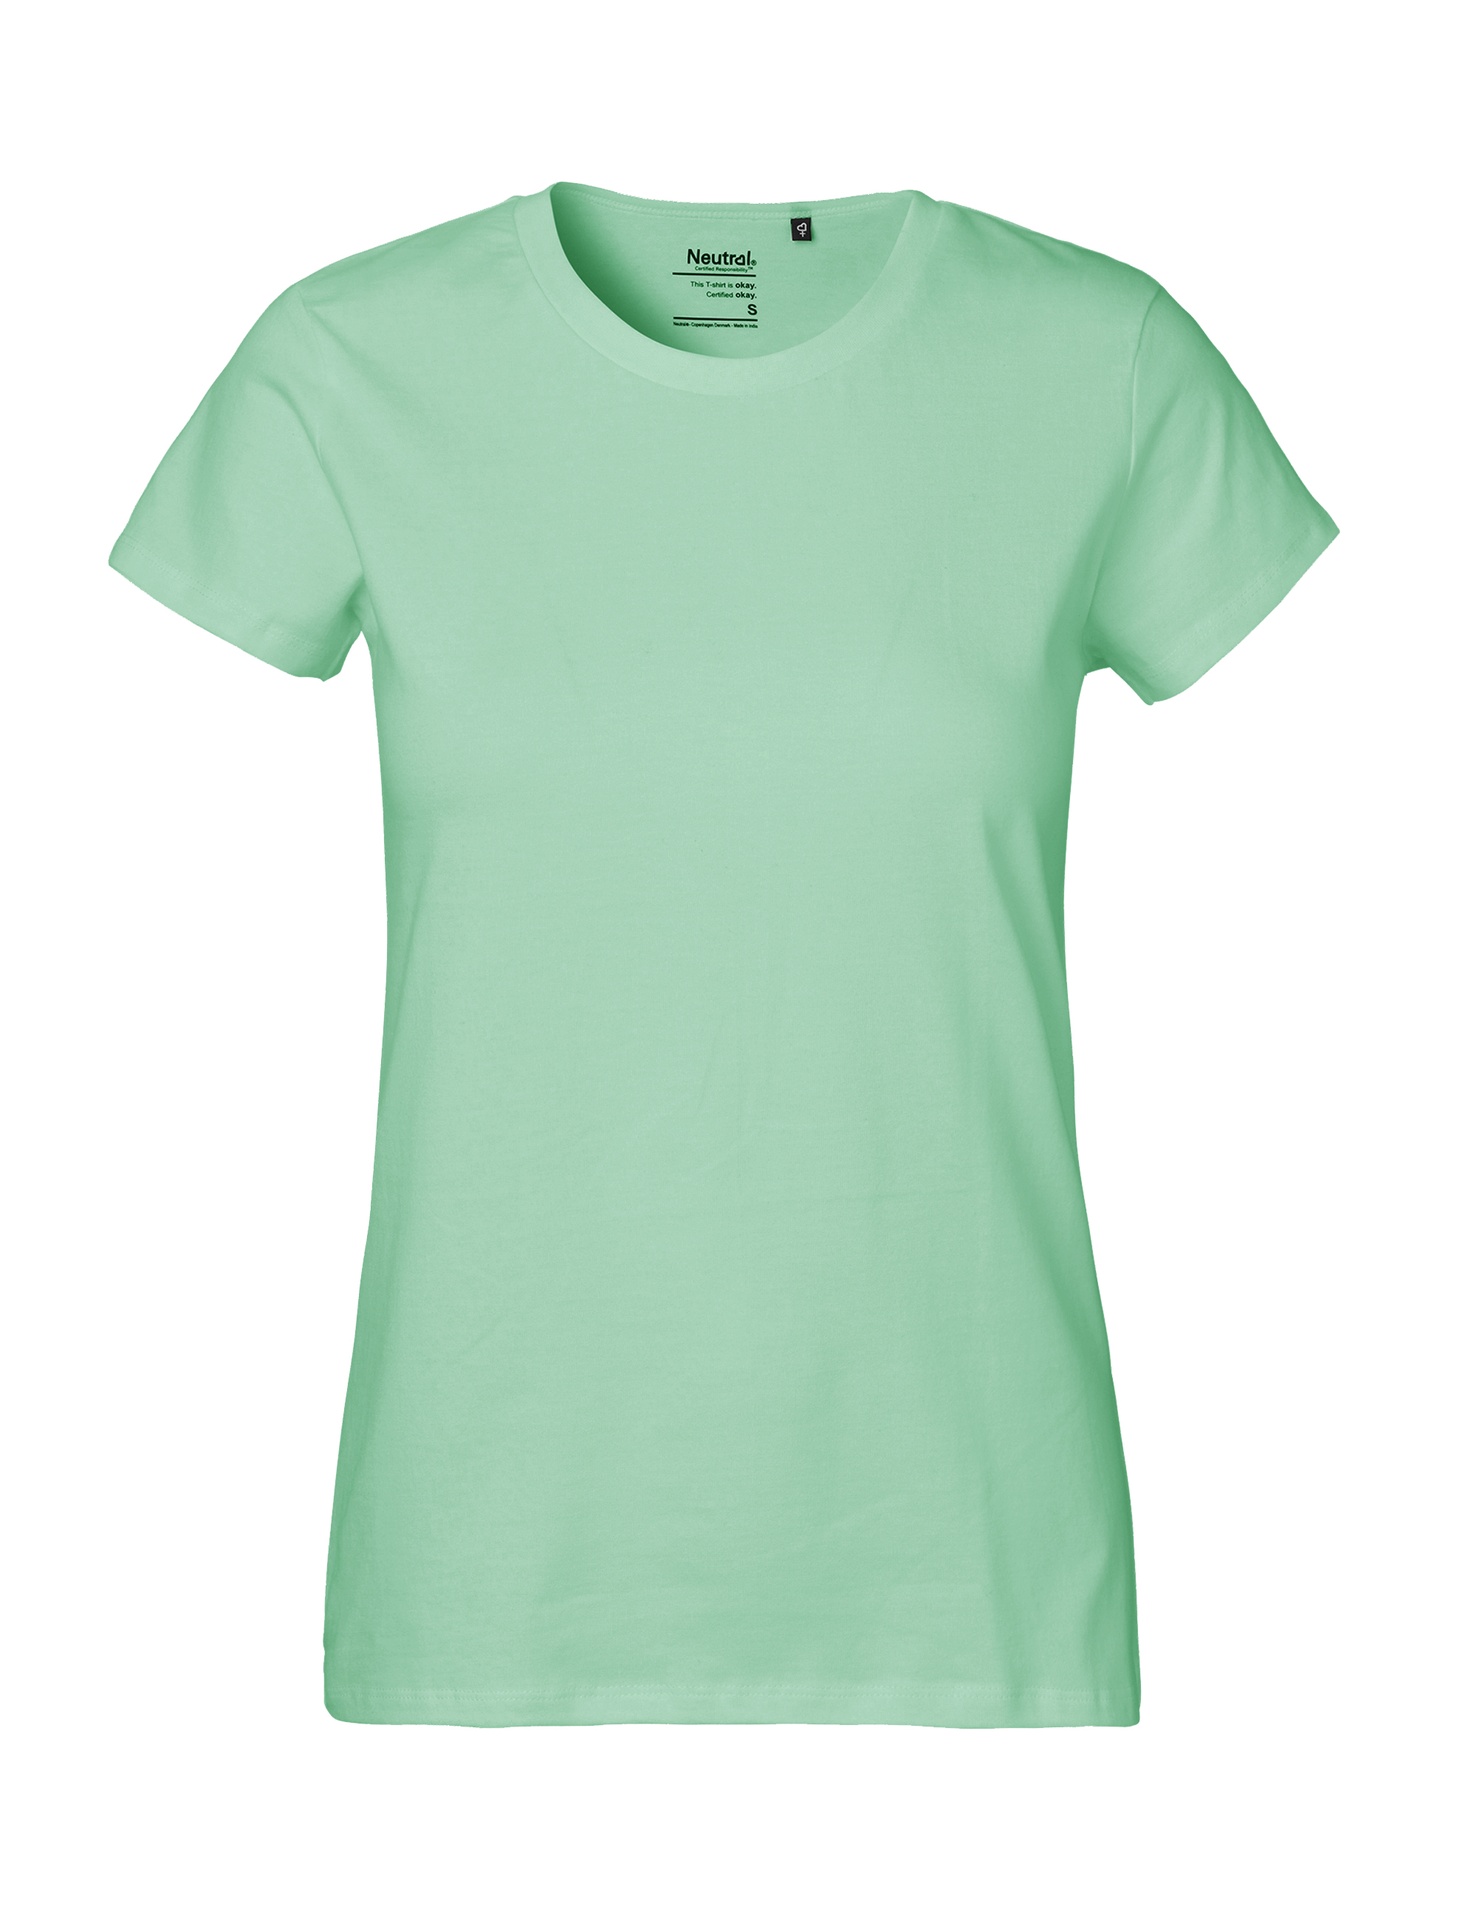 [PR/04105] Ladies Classic T-Shirt (Dusty Mint 40, XS)